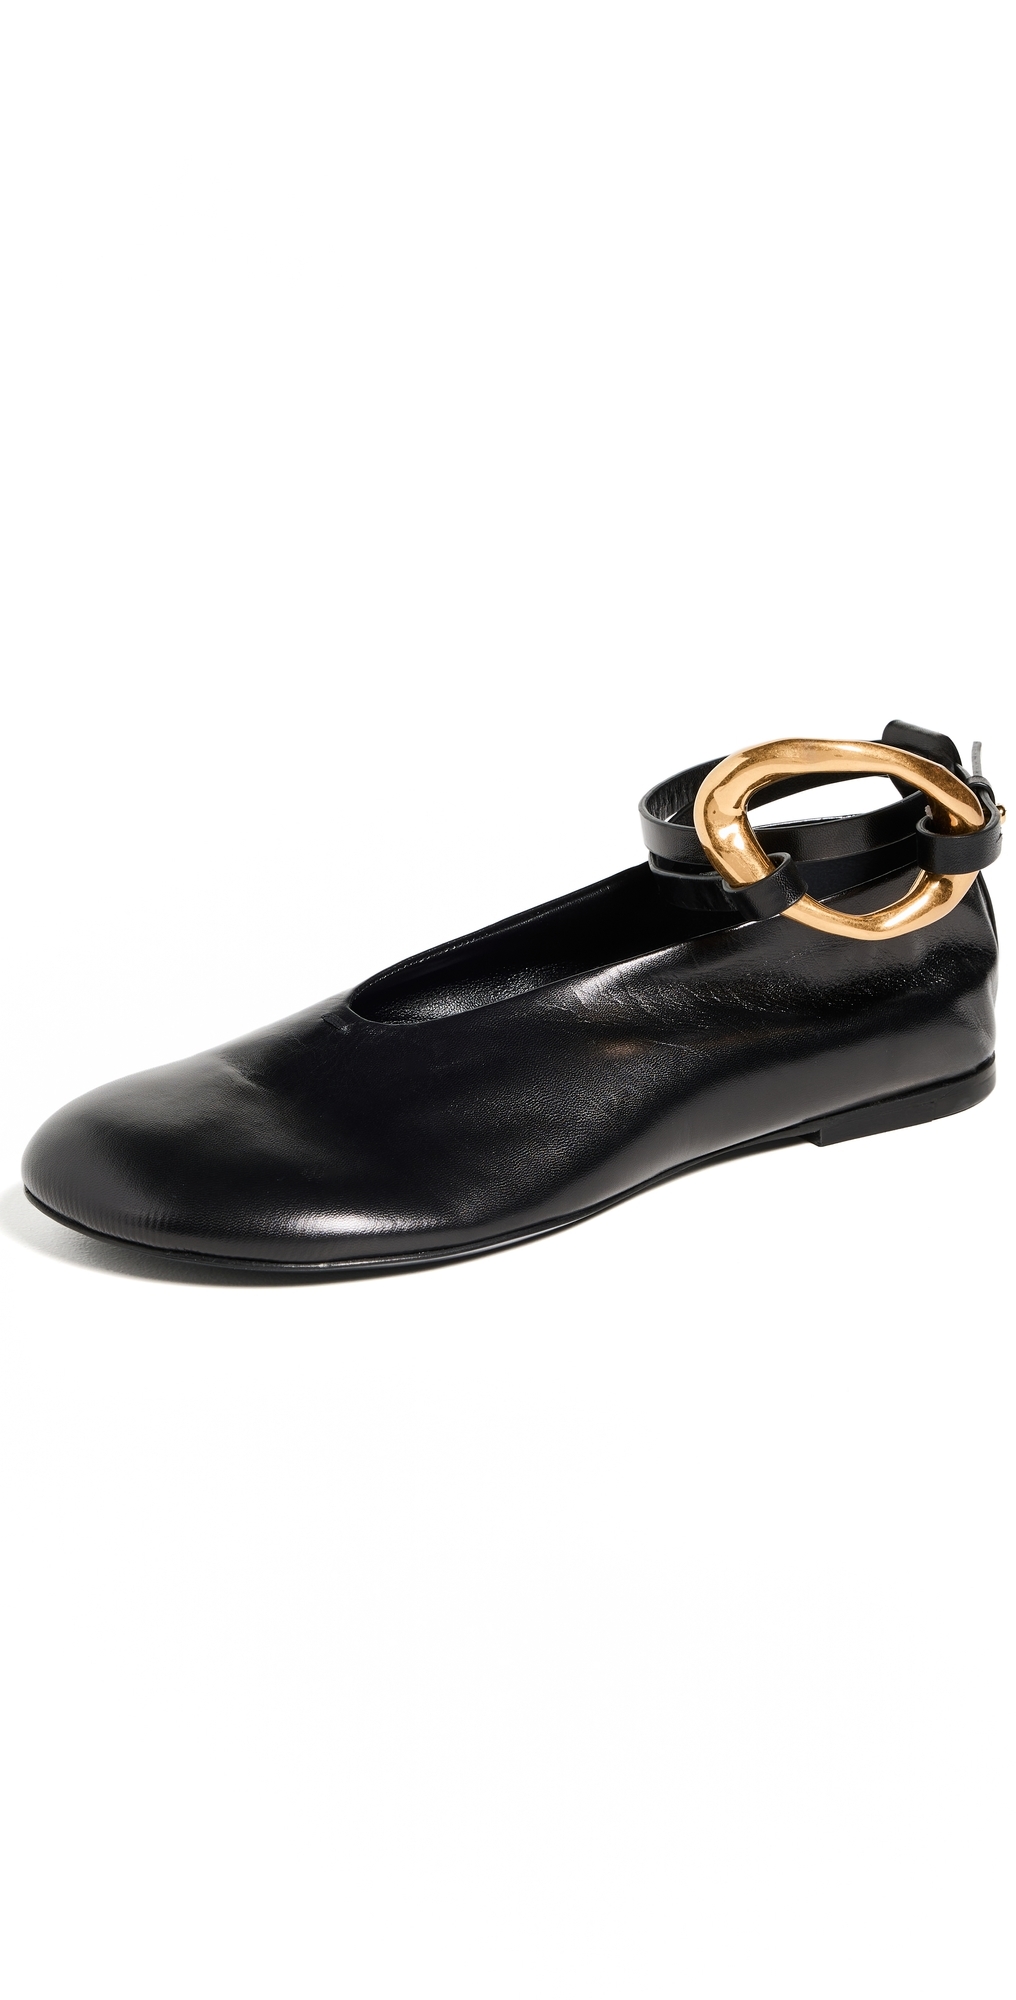 Jil Sander Ballet Shoes Black 35